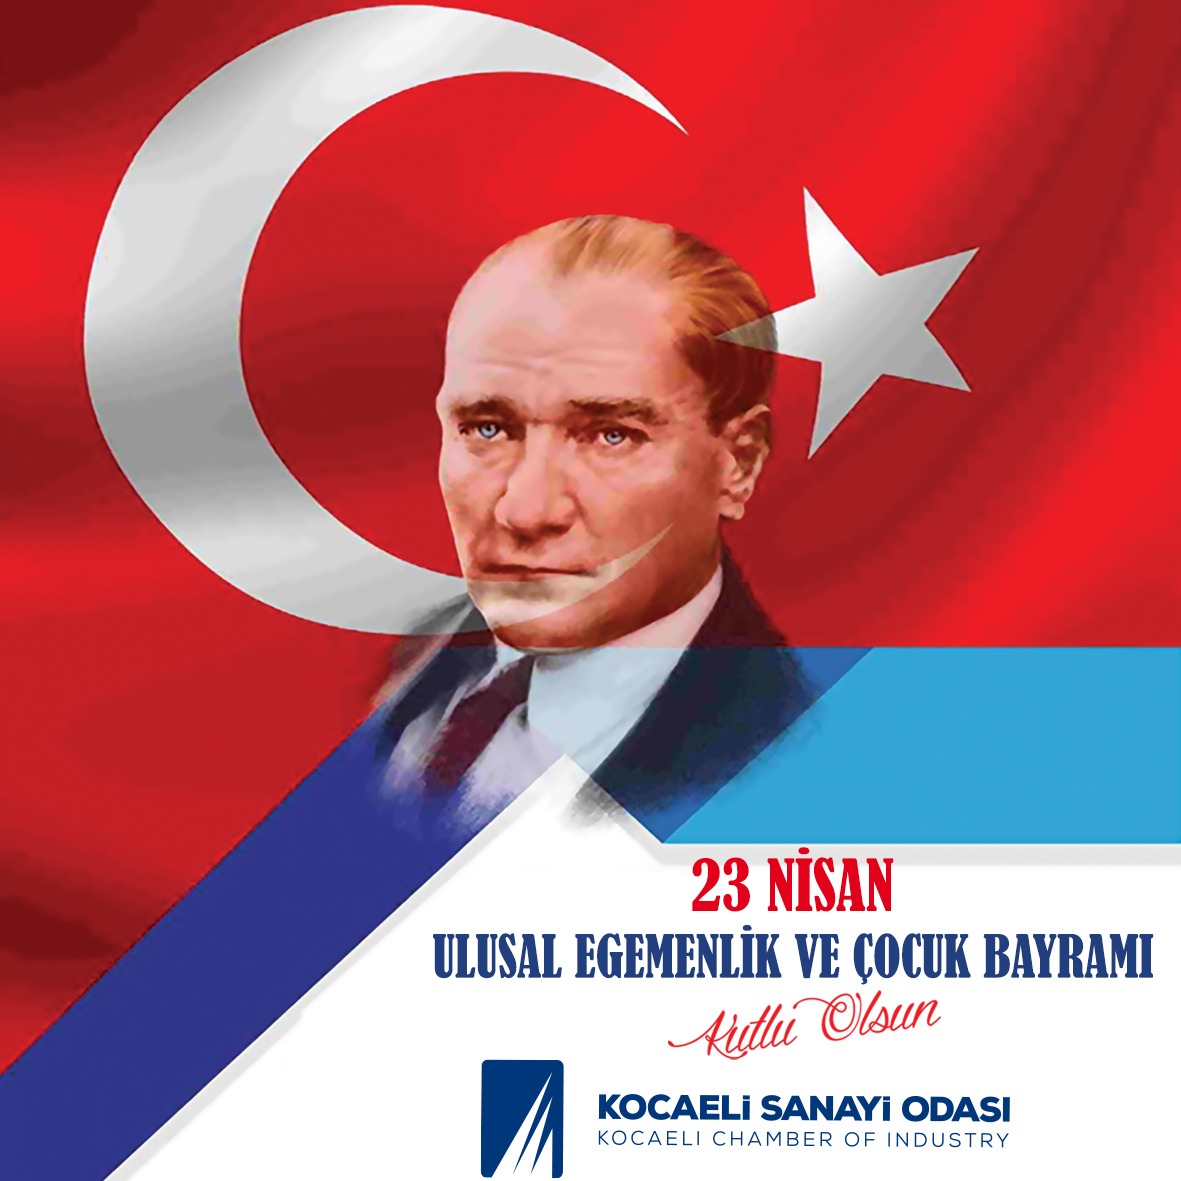 Gazi Mustafa Kemal Atatürk’ün, aydınlık geleceğimiz olan çocuklarımıza armağan ettiği 23 Nisan Ulusal Egemenlik ve Çocuk Bayramımız kutlu olsun. #23Nisan #UlusalEgemenlikveÇocukBayramı #MustafaKemalAtatürk